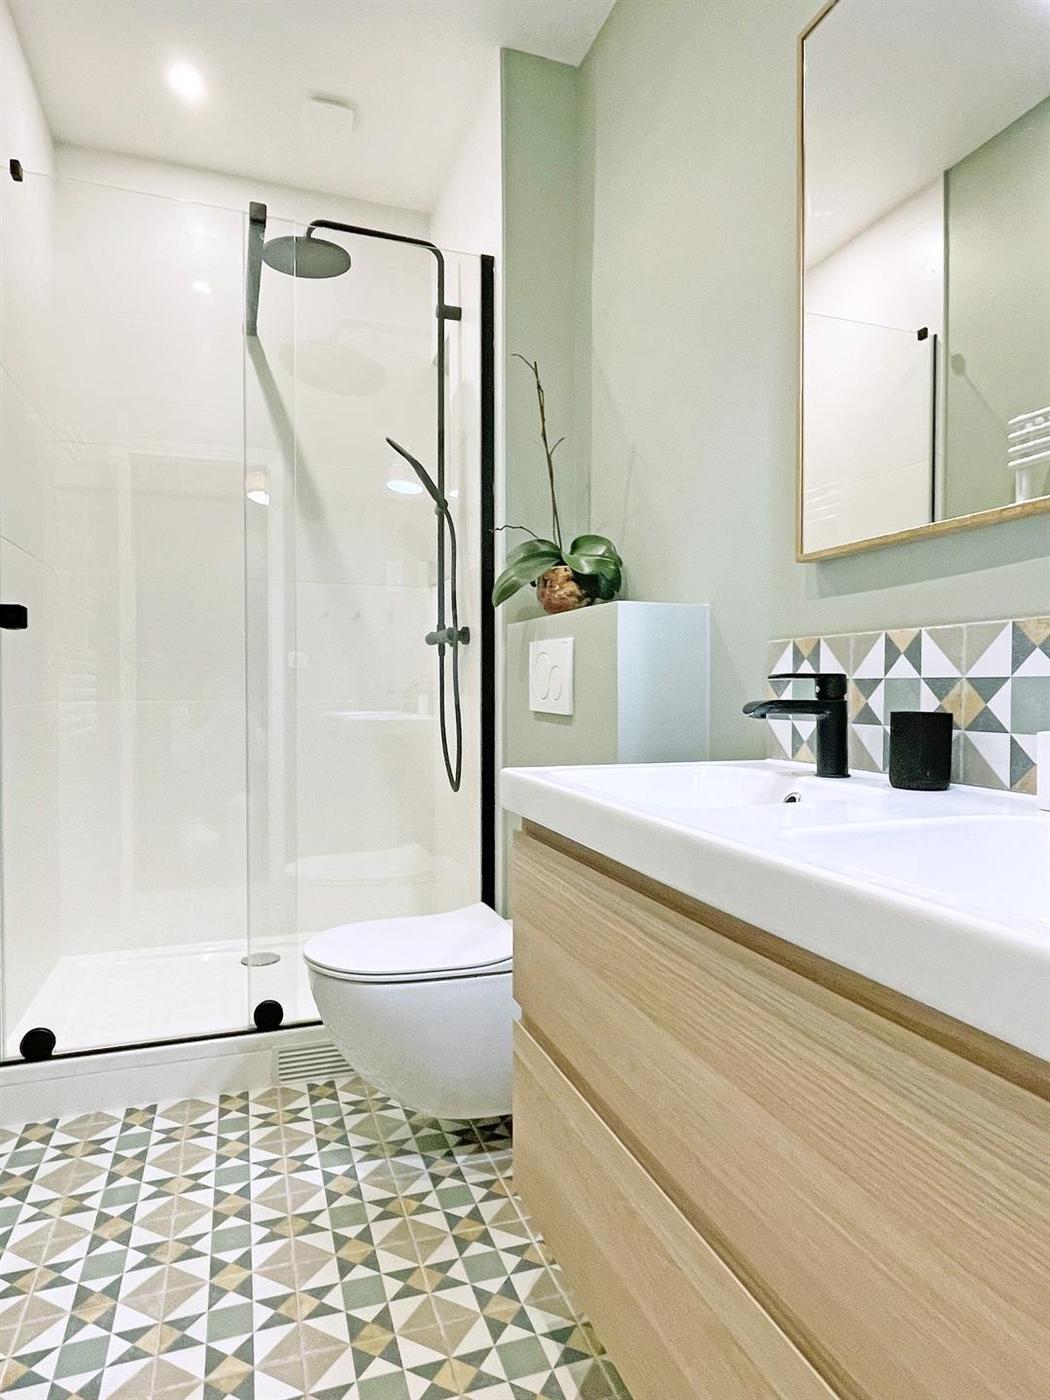 Carreau de ciment vert motifs géométriques 20x20 cm dans une salle de bain moderne tons pastels avec meubles en bois clair et détails noirs